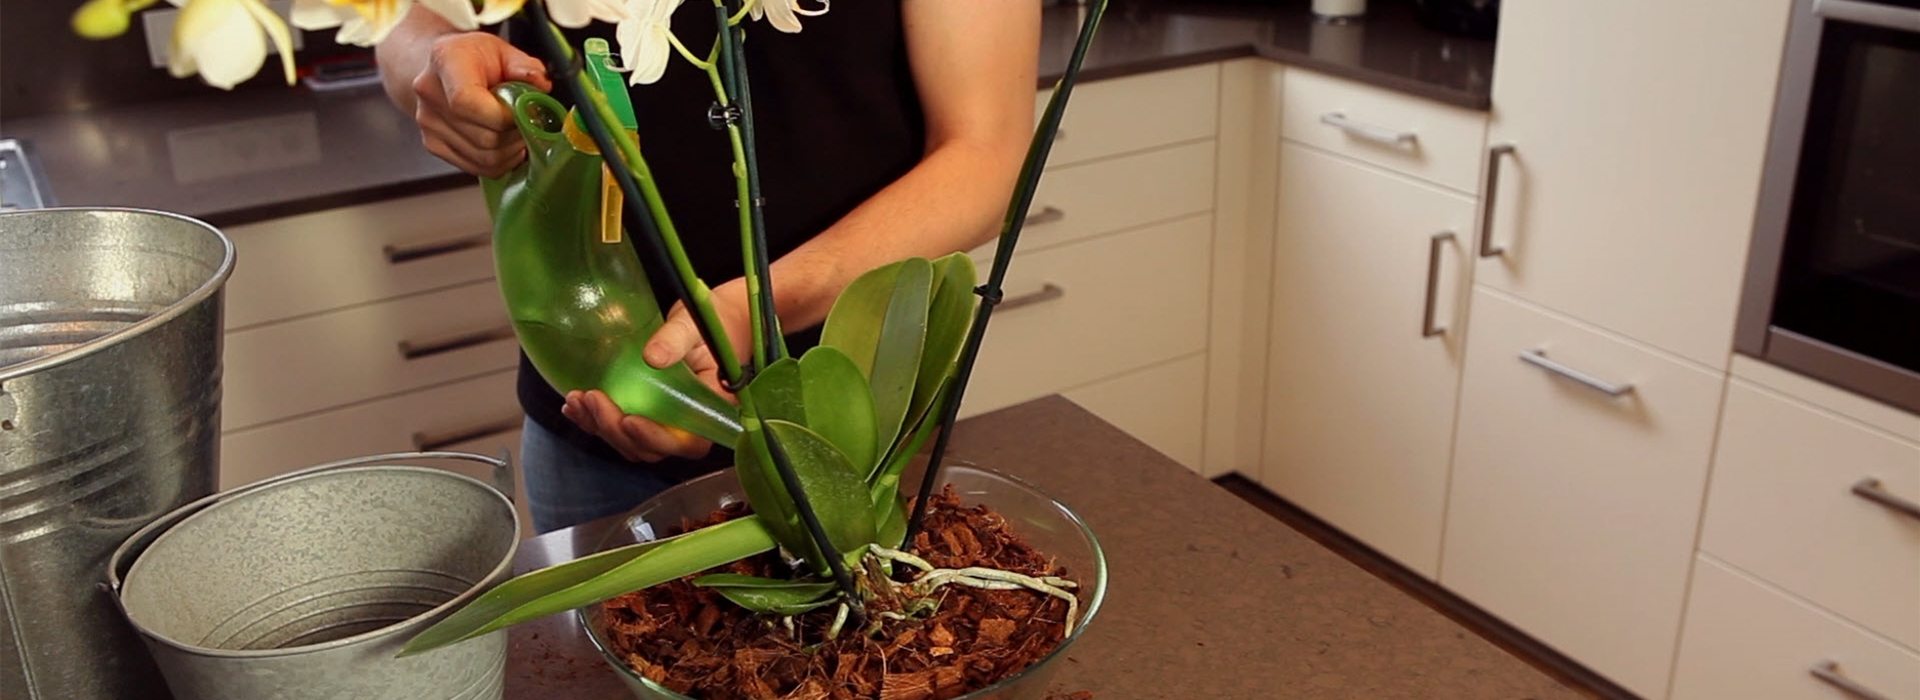 Orchidee - Einpflanzen in ein Gefäß (thumbnail)